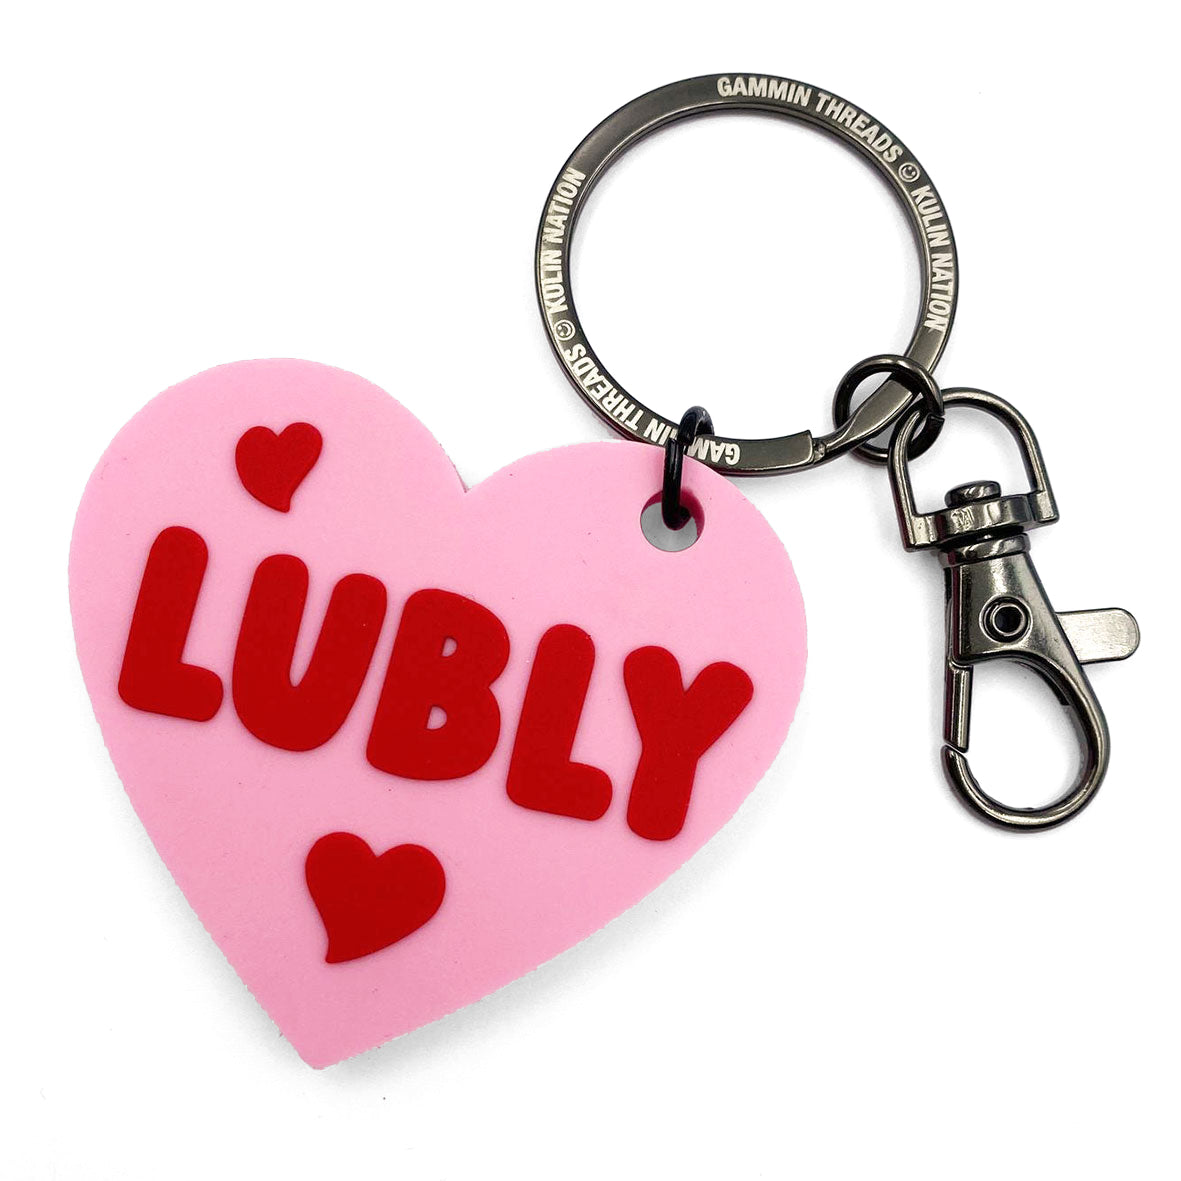 Lubly key chain